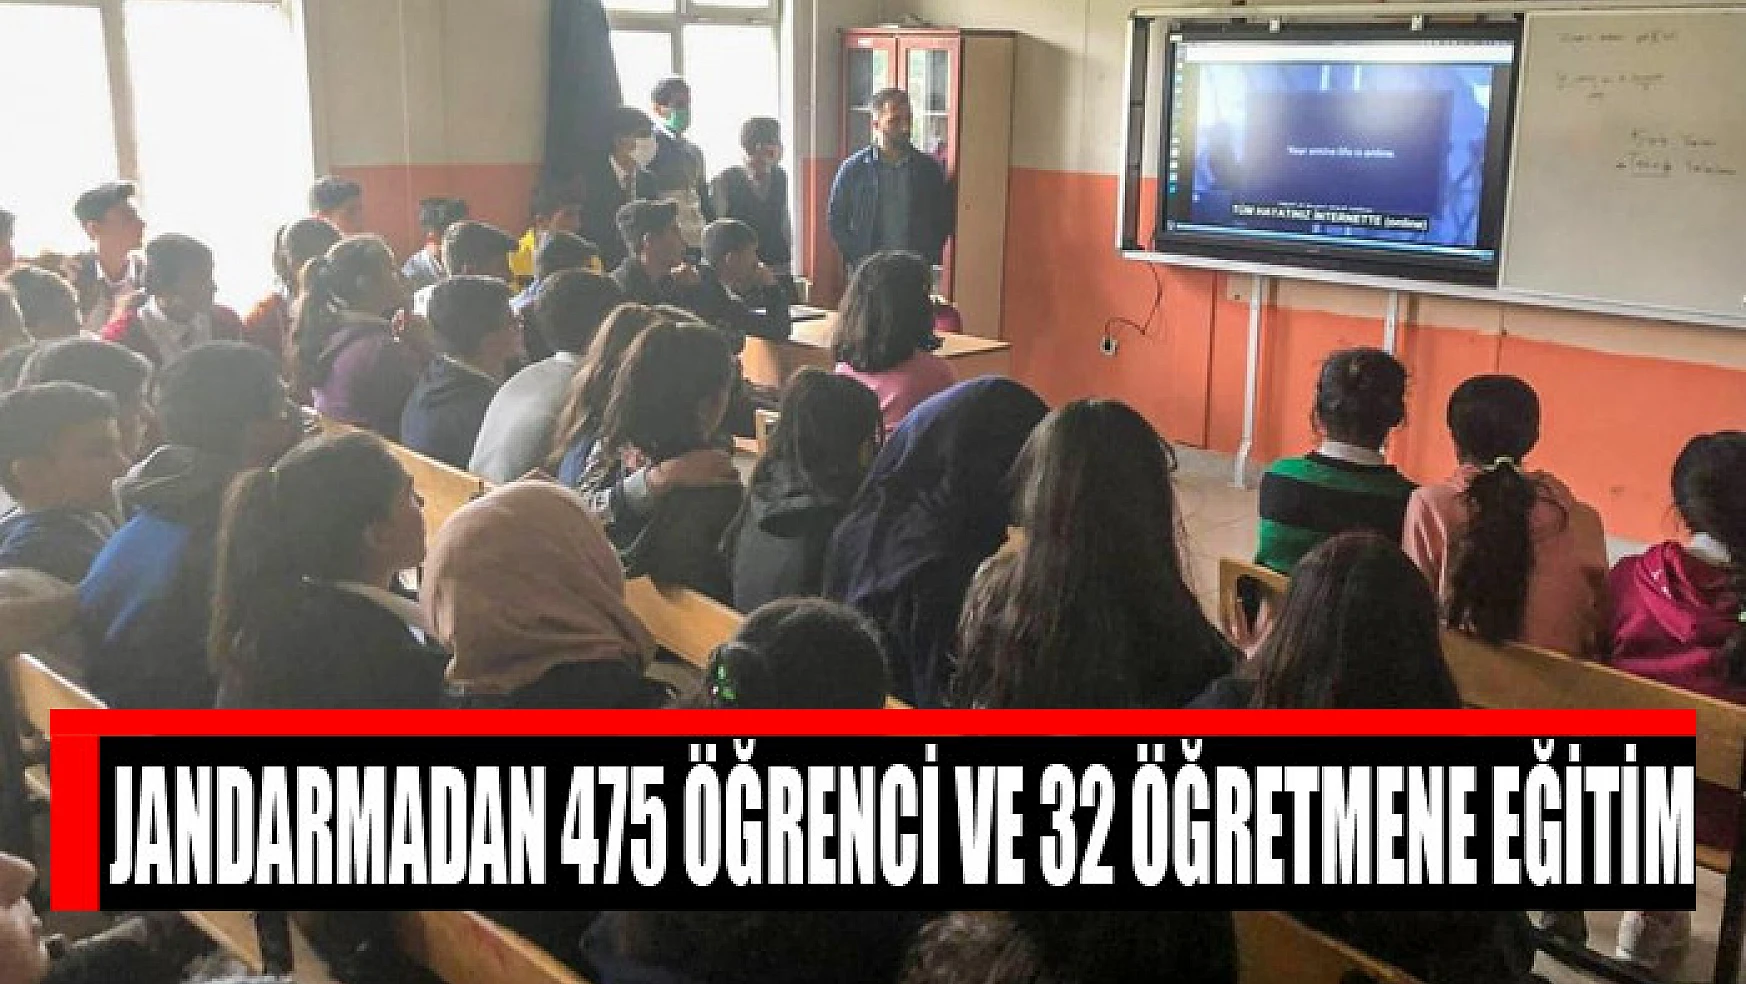 Jandarmadan 475 öğrenci ve 32 öğretmene eğitim